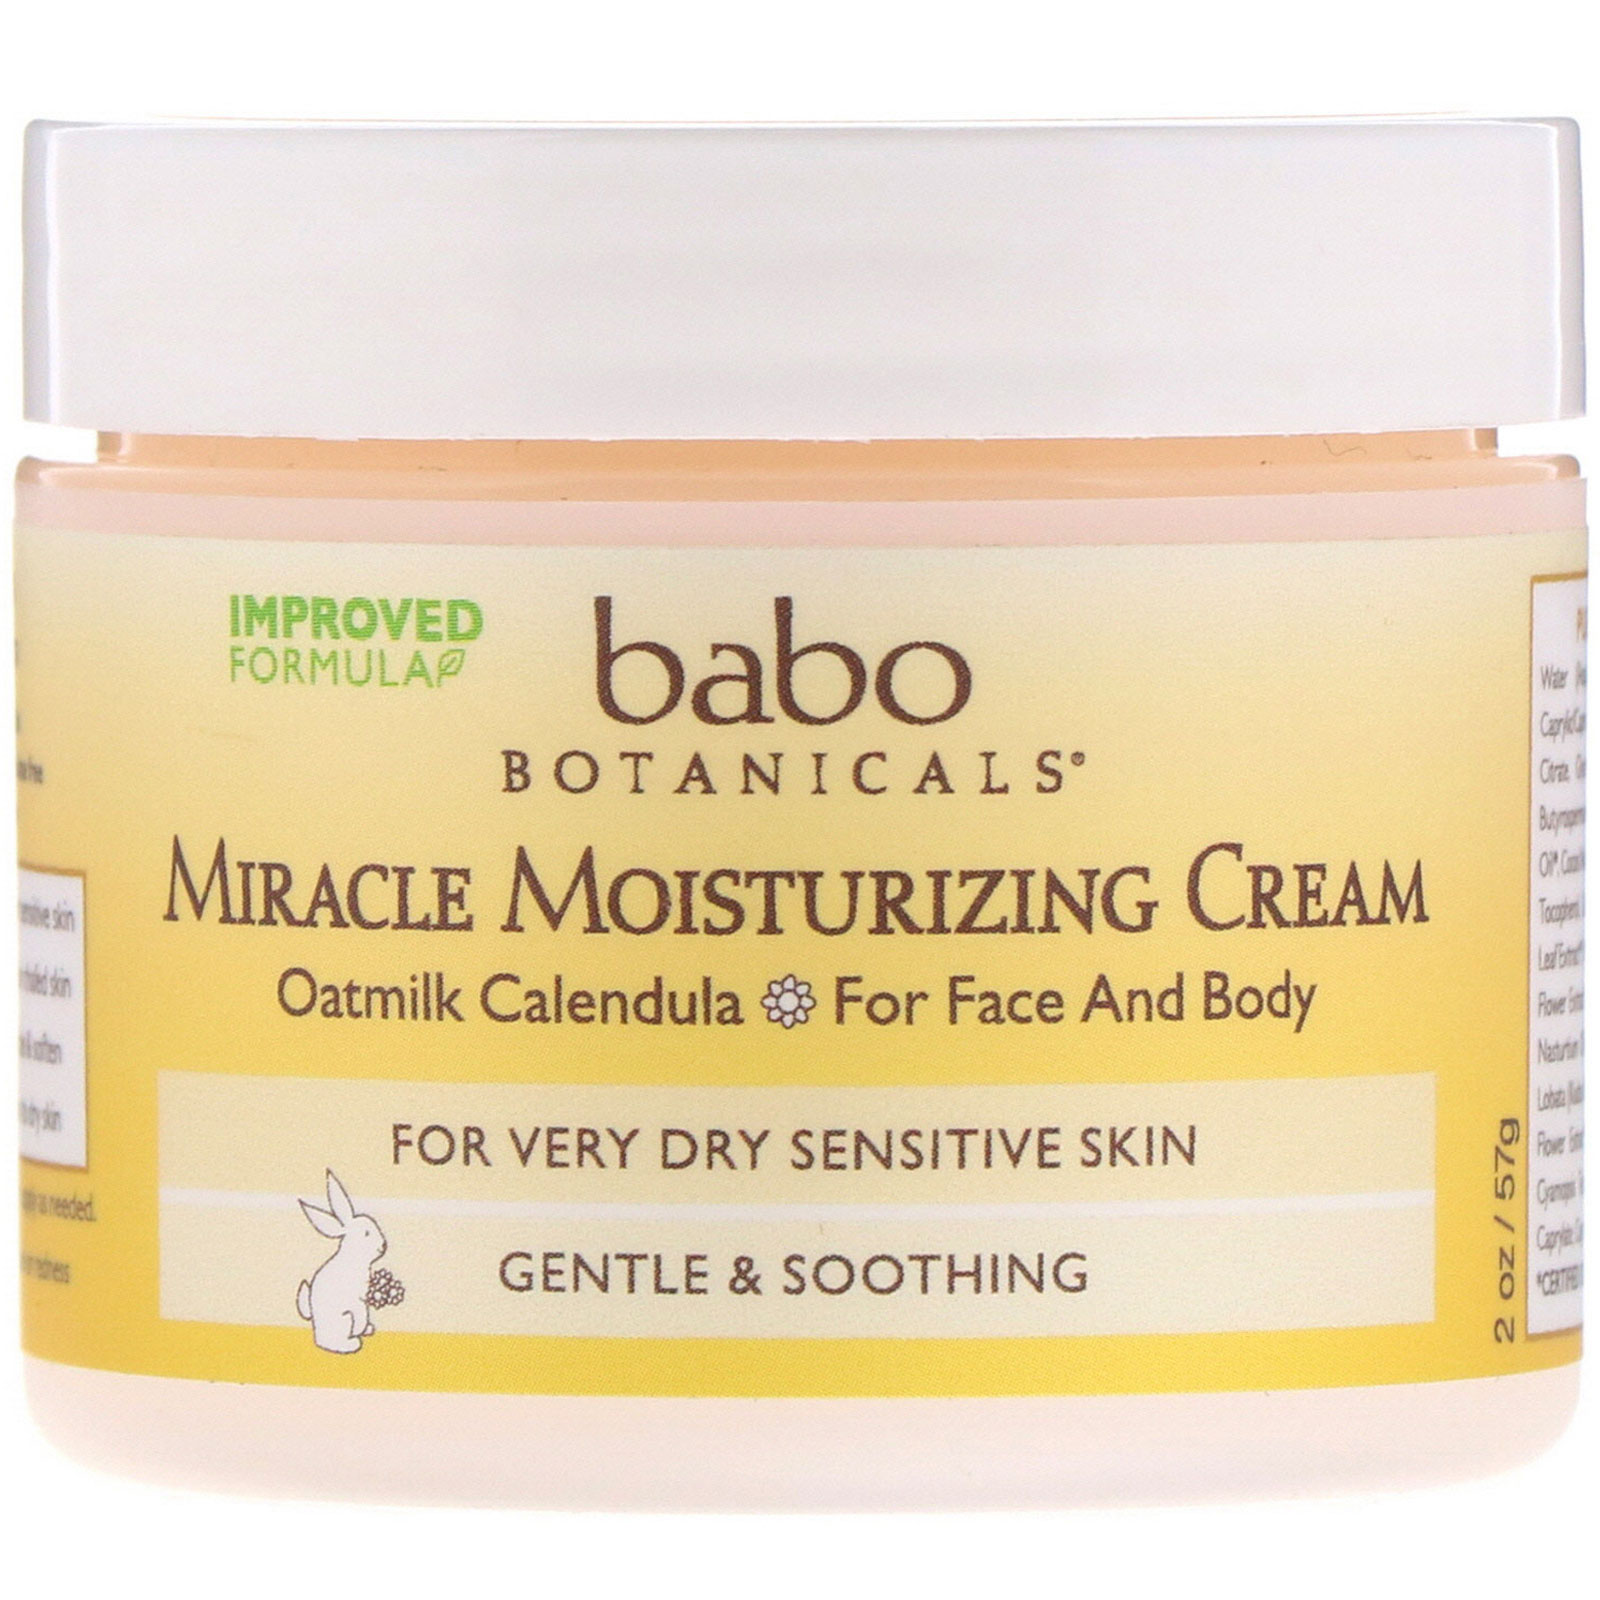 babo botanicals miracle moisturizing cream